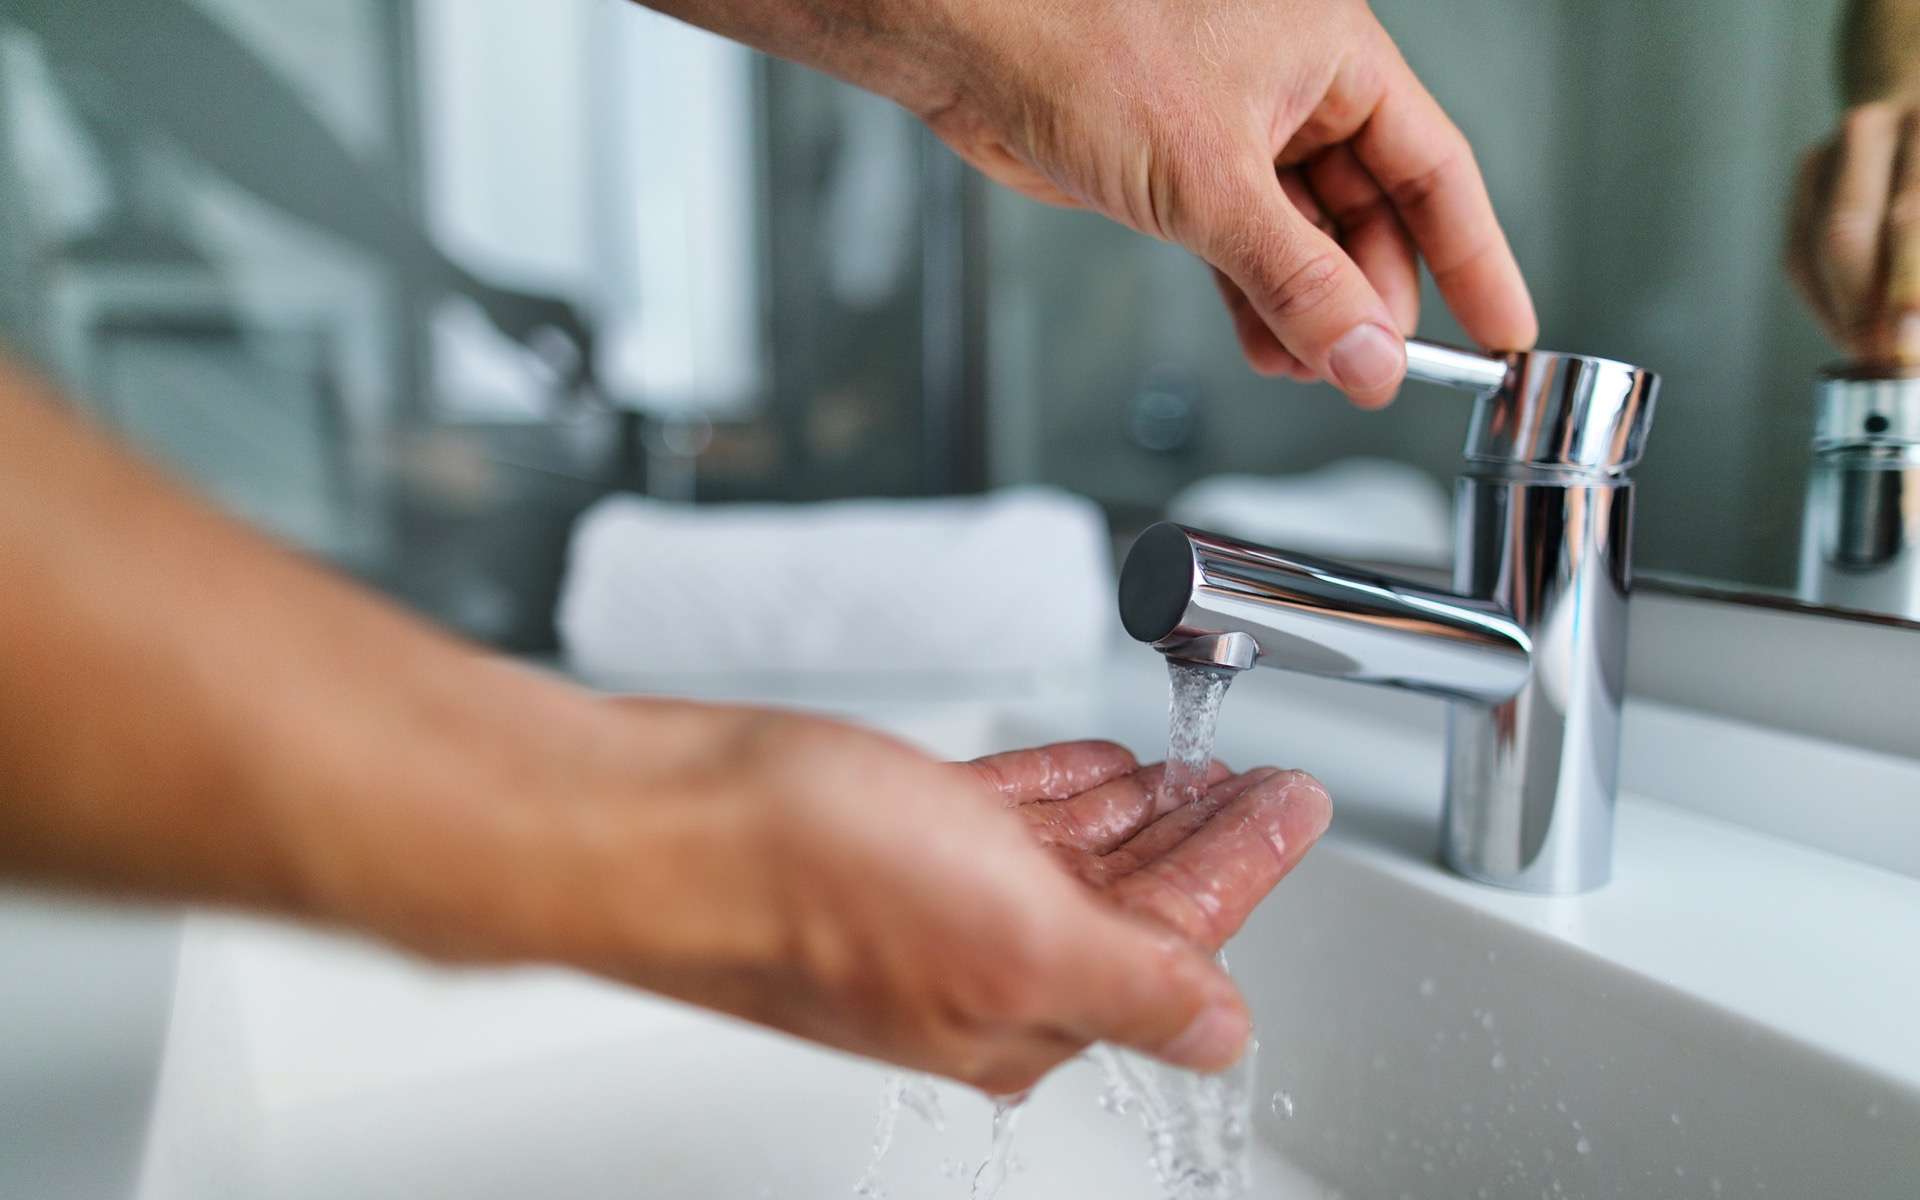 Utiliser l'eau chaude du robinet pour cuisiner : une mauvaise habitude